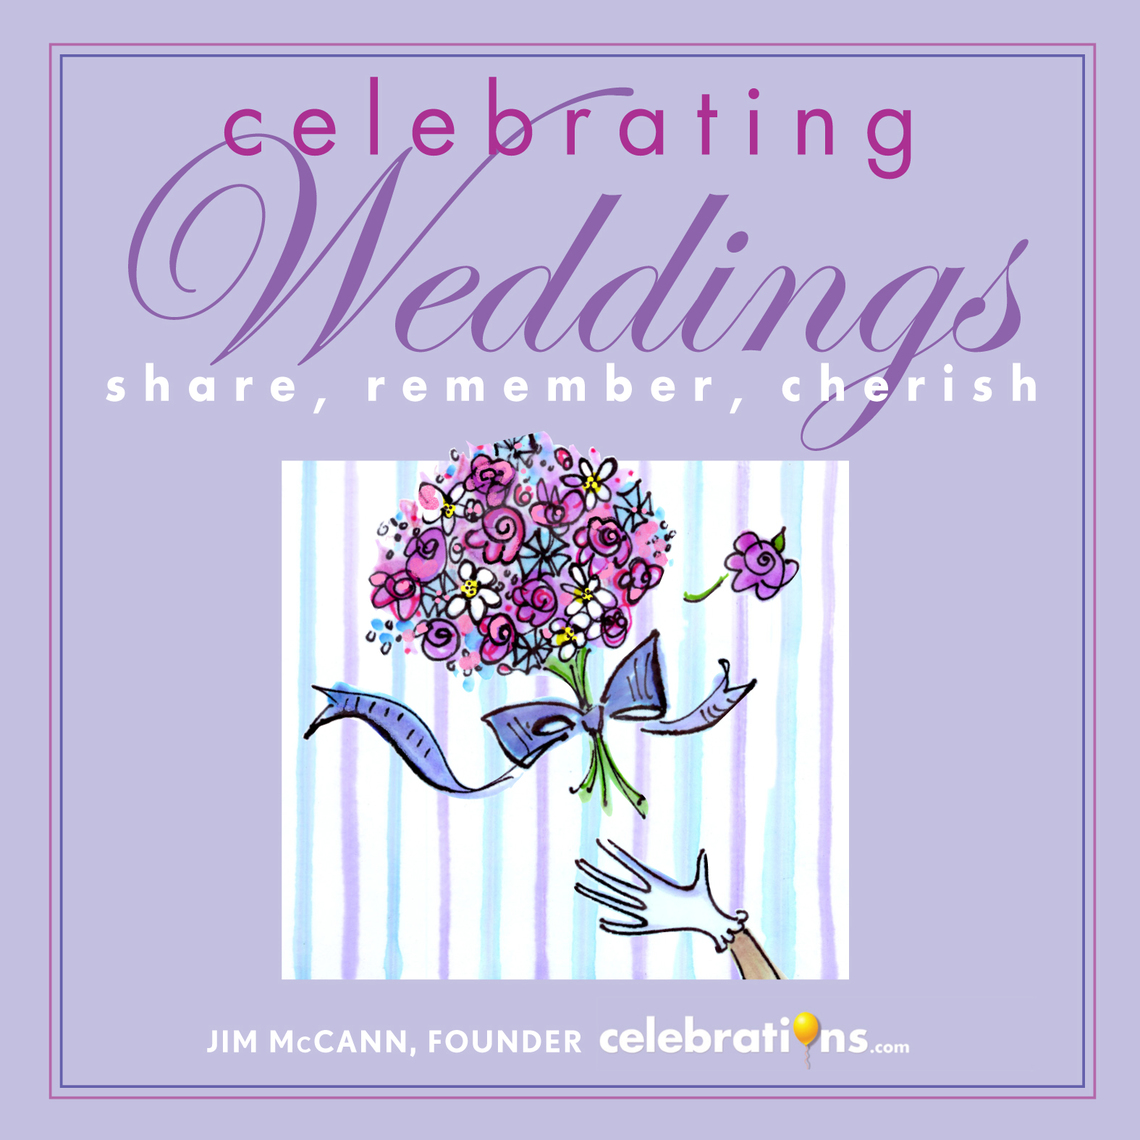 Celebrating Weddings by Jim McCann pic